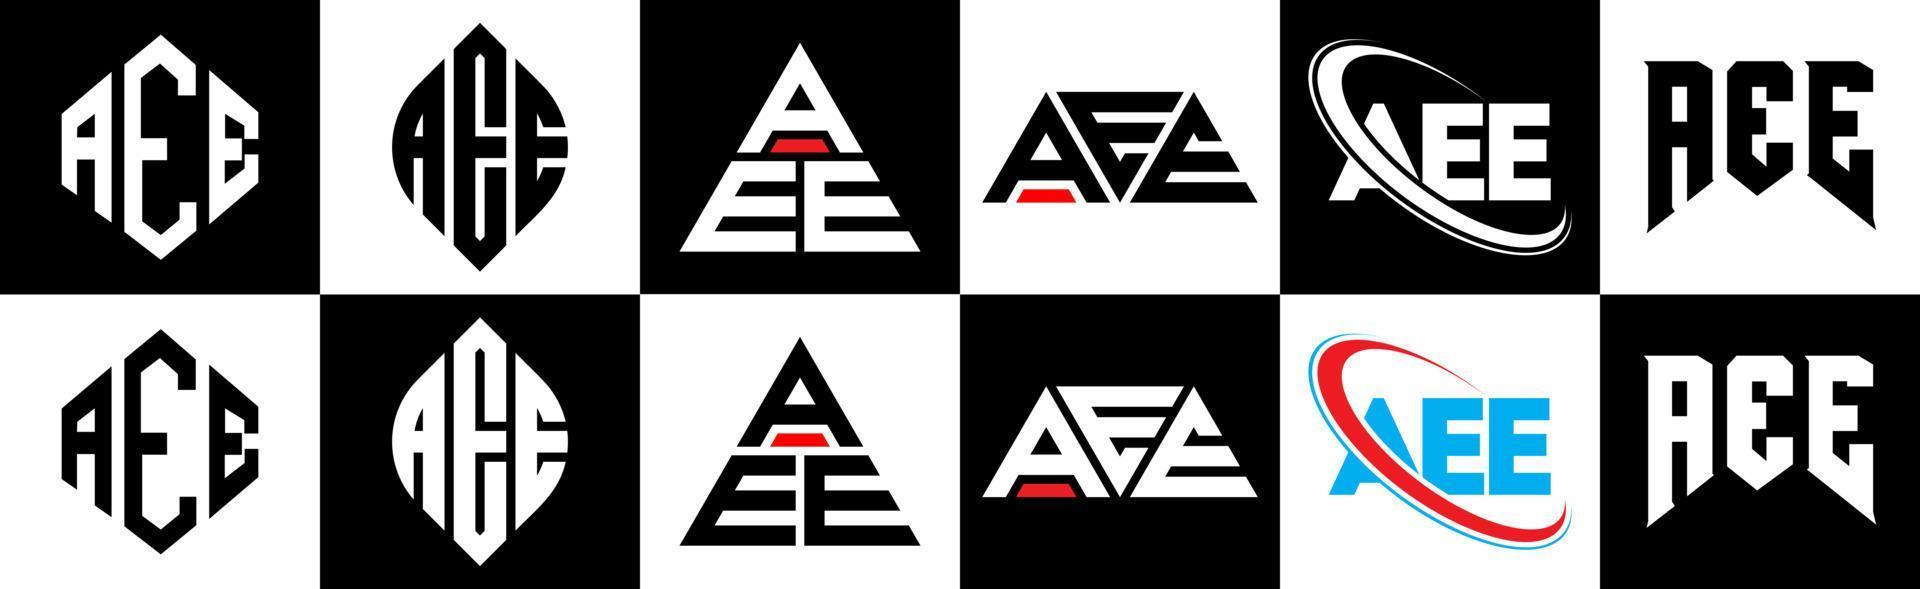 aee-Buchstaben-Logo-Design in sechs Stilen. aee polygon, kreis, dreieck, hexagon, flacher und einfacher stil mit schwarz-weißem buchstabenlogo in einer zeichenfläche. aee minimalistisches und klassisches Logo vektor